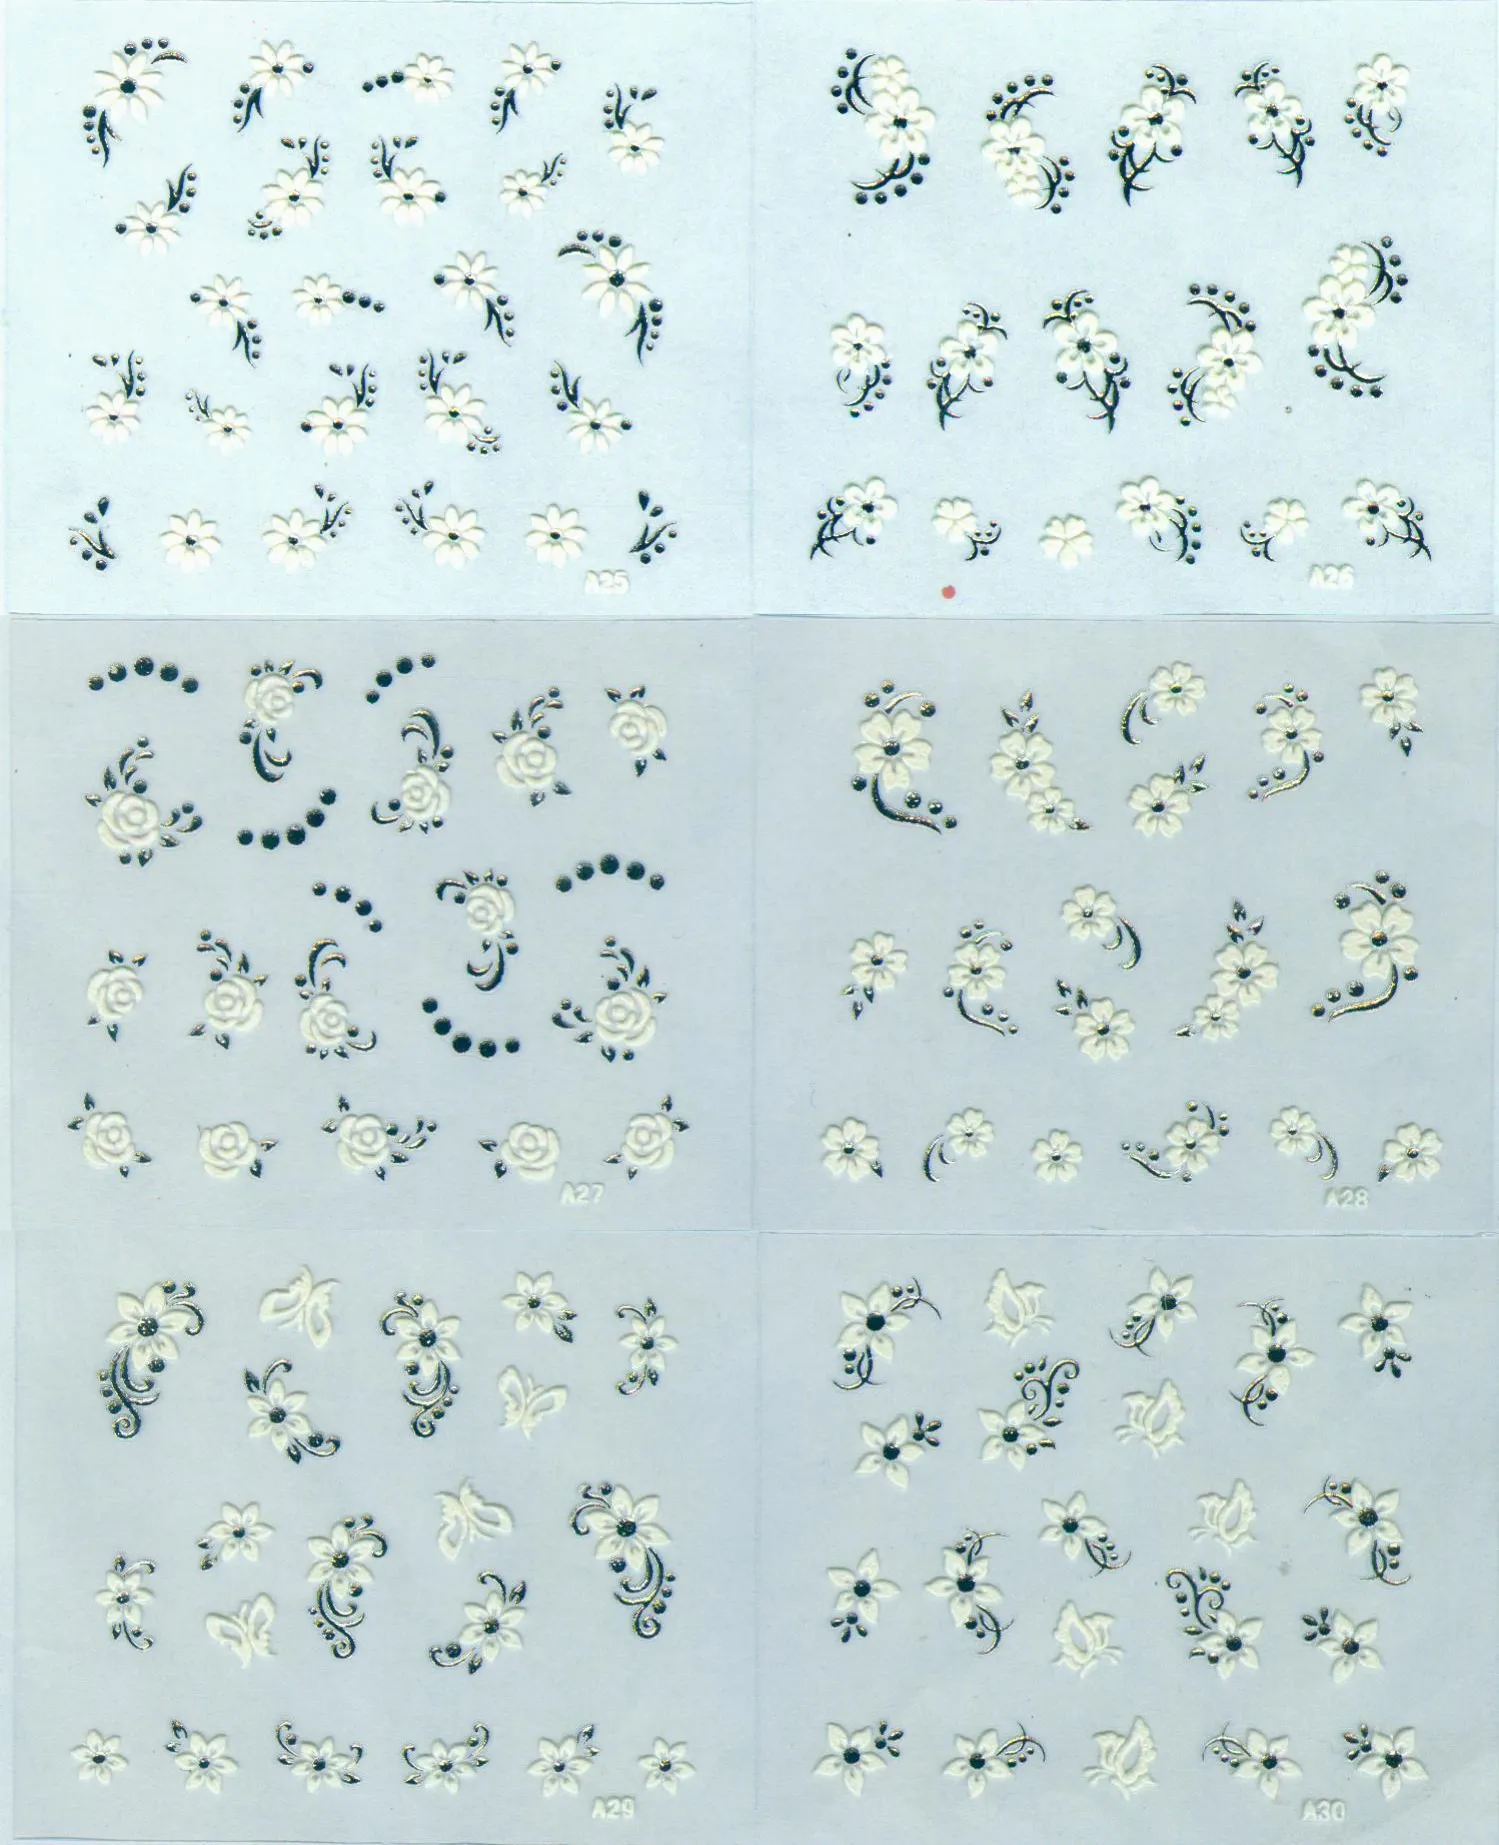 Nail Art Dekorationen 3D Nageldichtung 30 Sätze Silber + Weiße Blume Dekor Nagel Sticke A 01-30